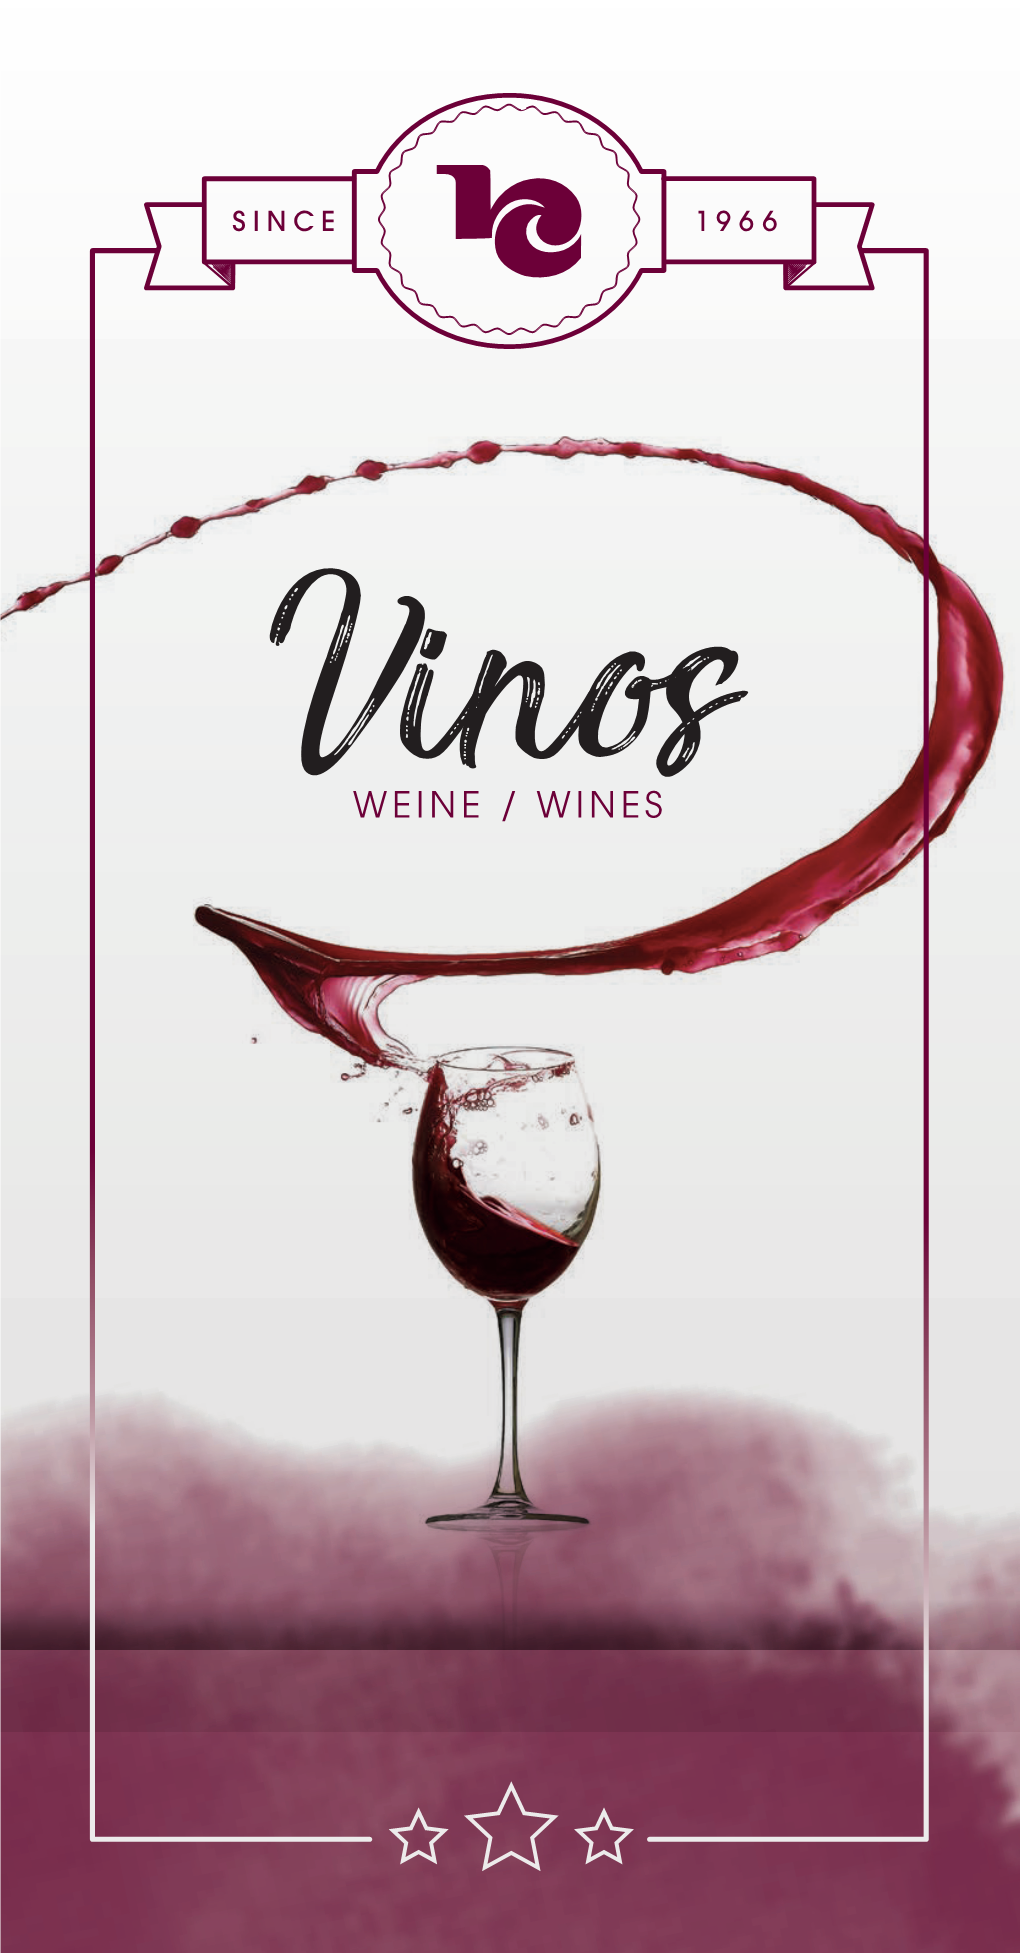 Vinosweine / WINES